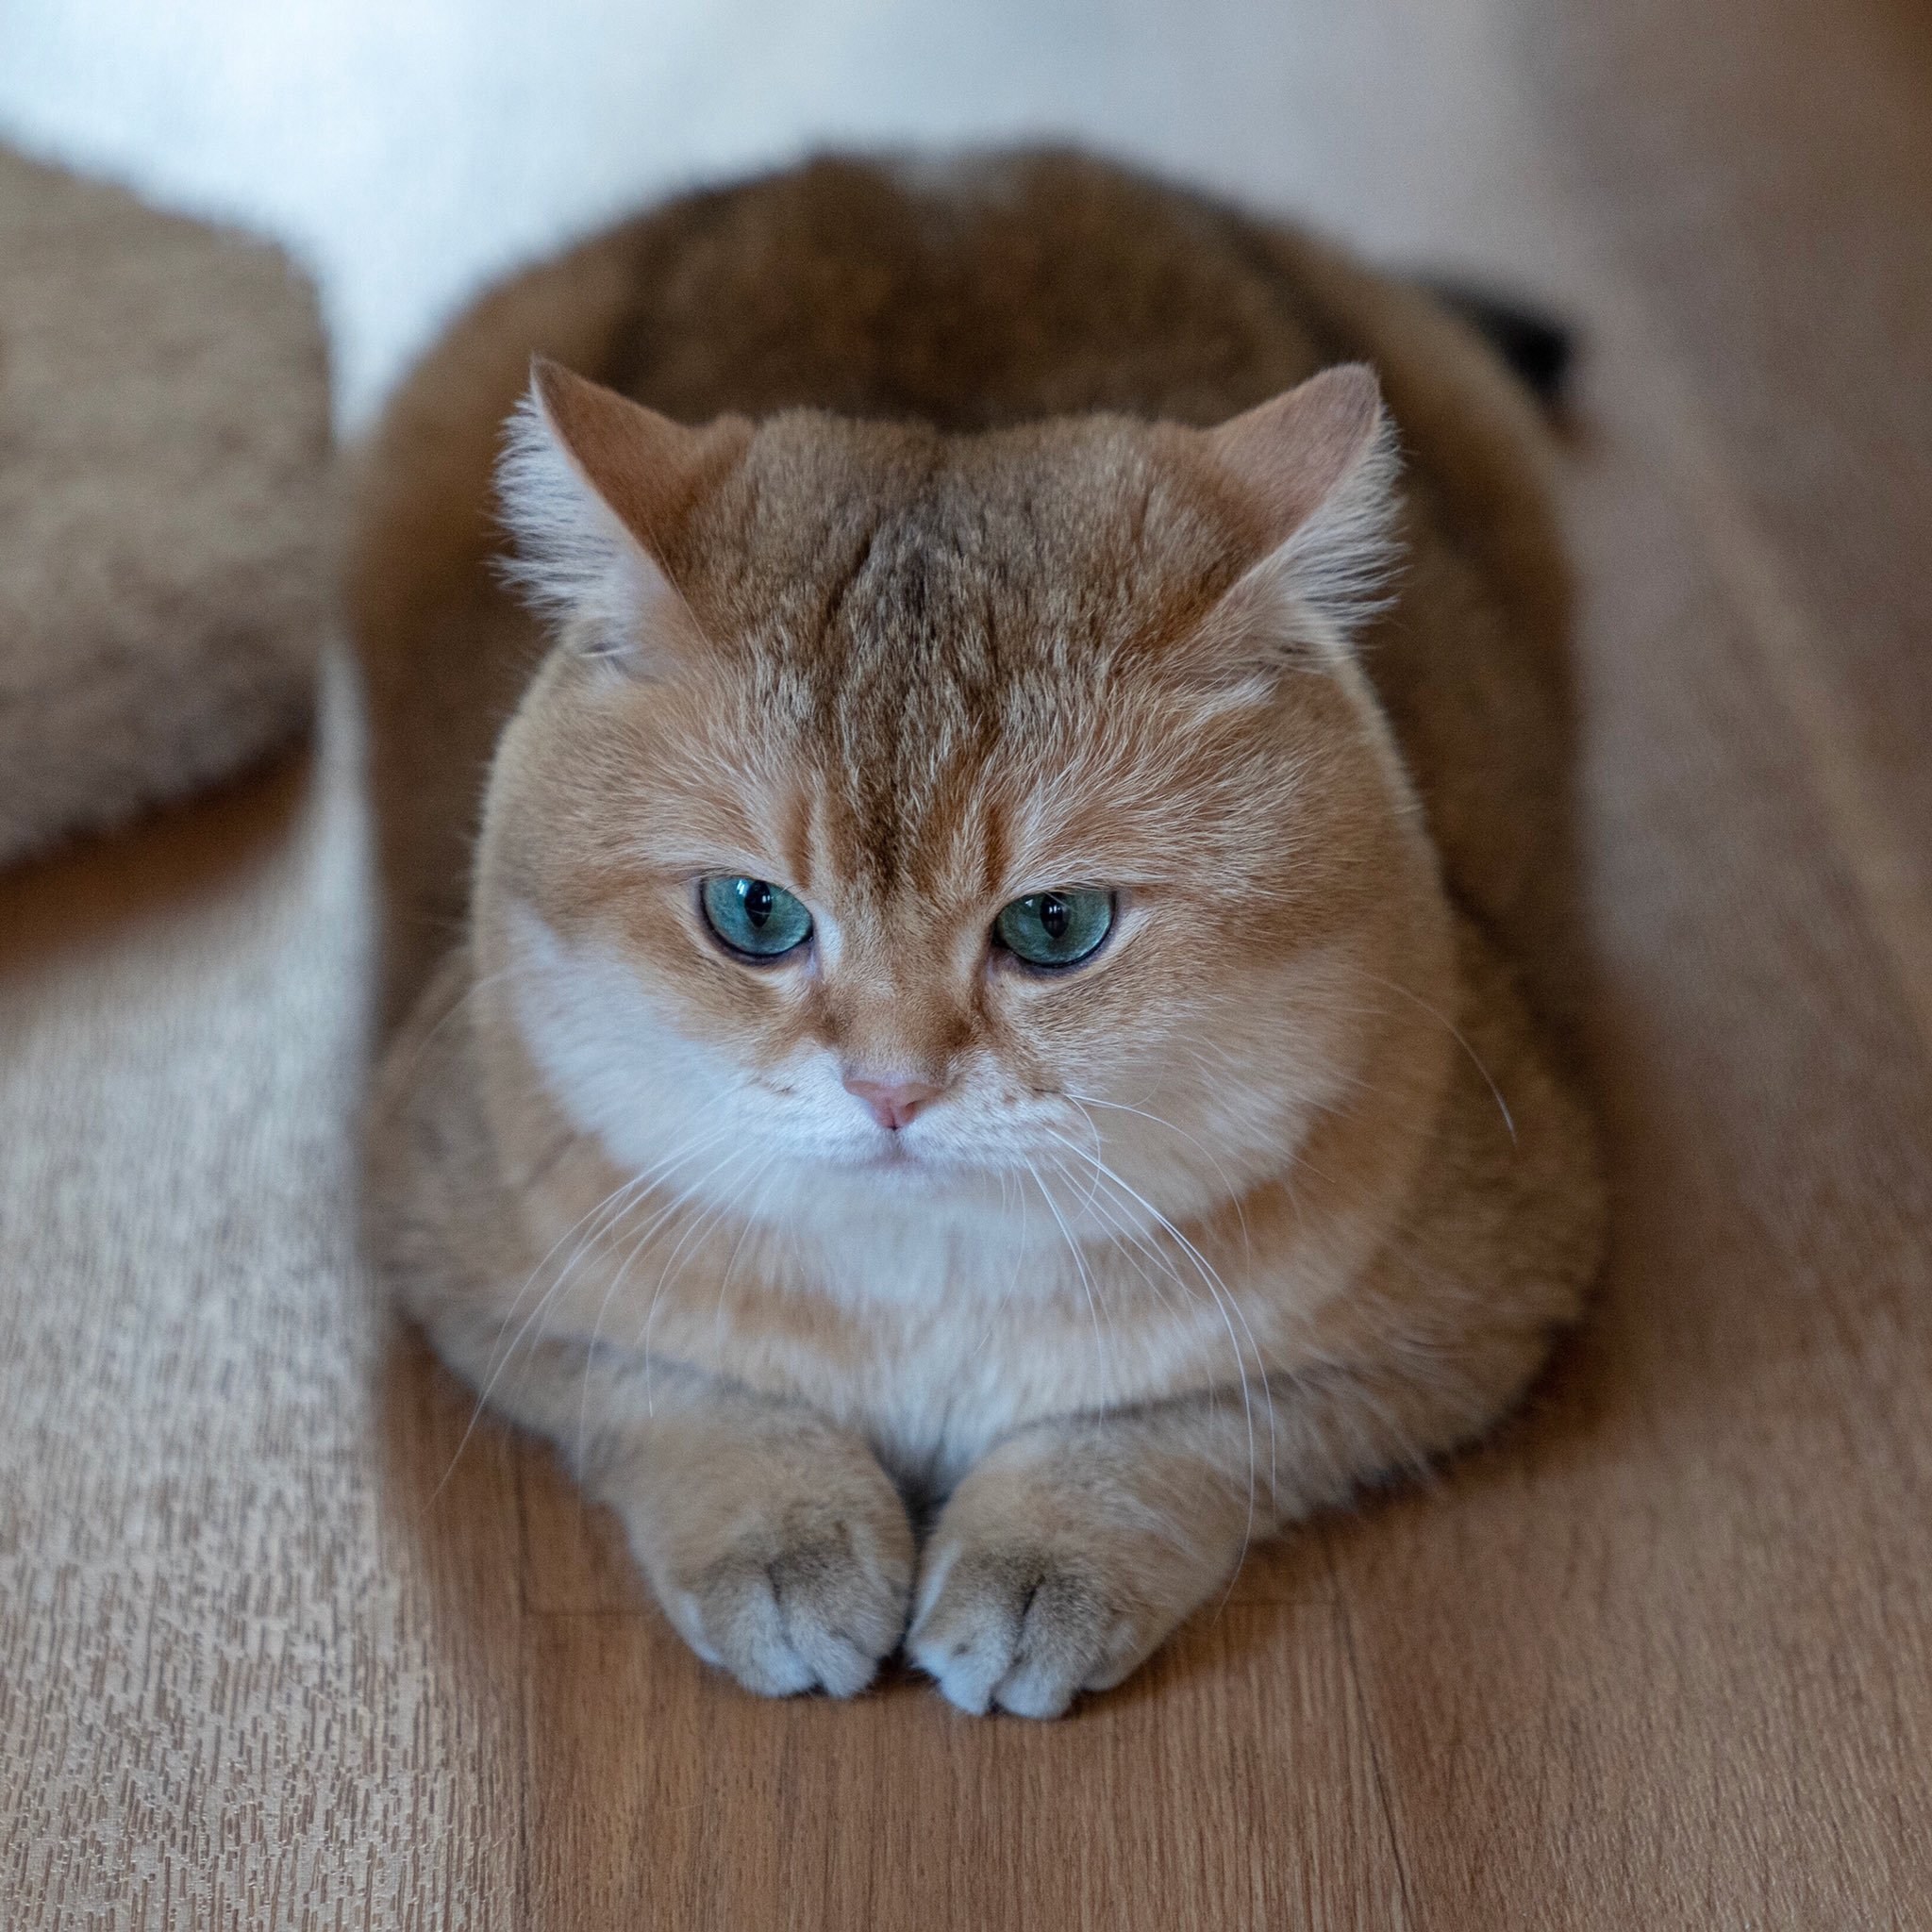 Плюшевая кошка живая - картинки и фото koshka.top